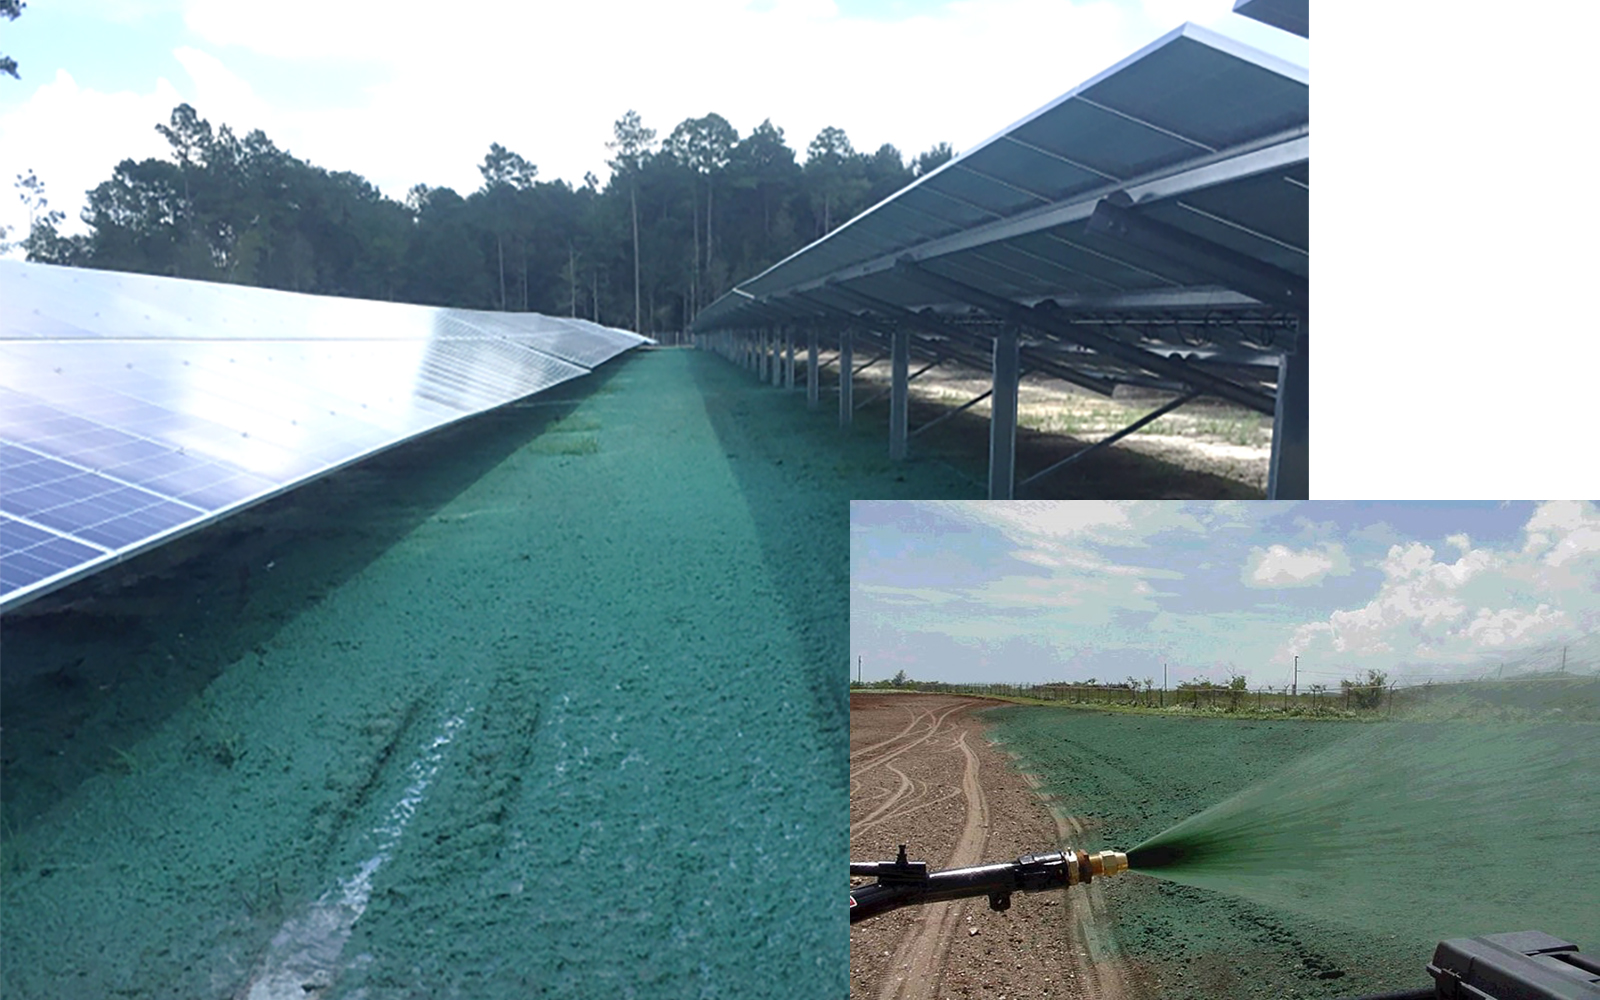 Hydromulch & Flexible Growth Medium Solutions for Solar Farms